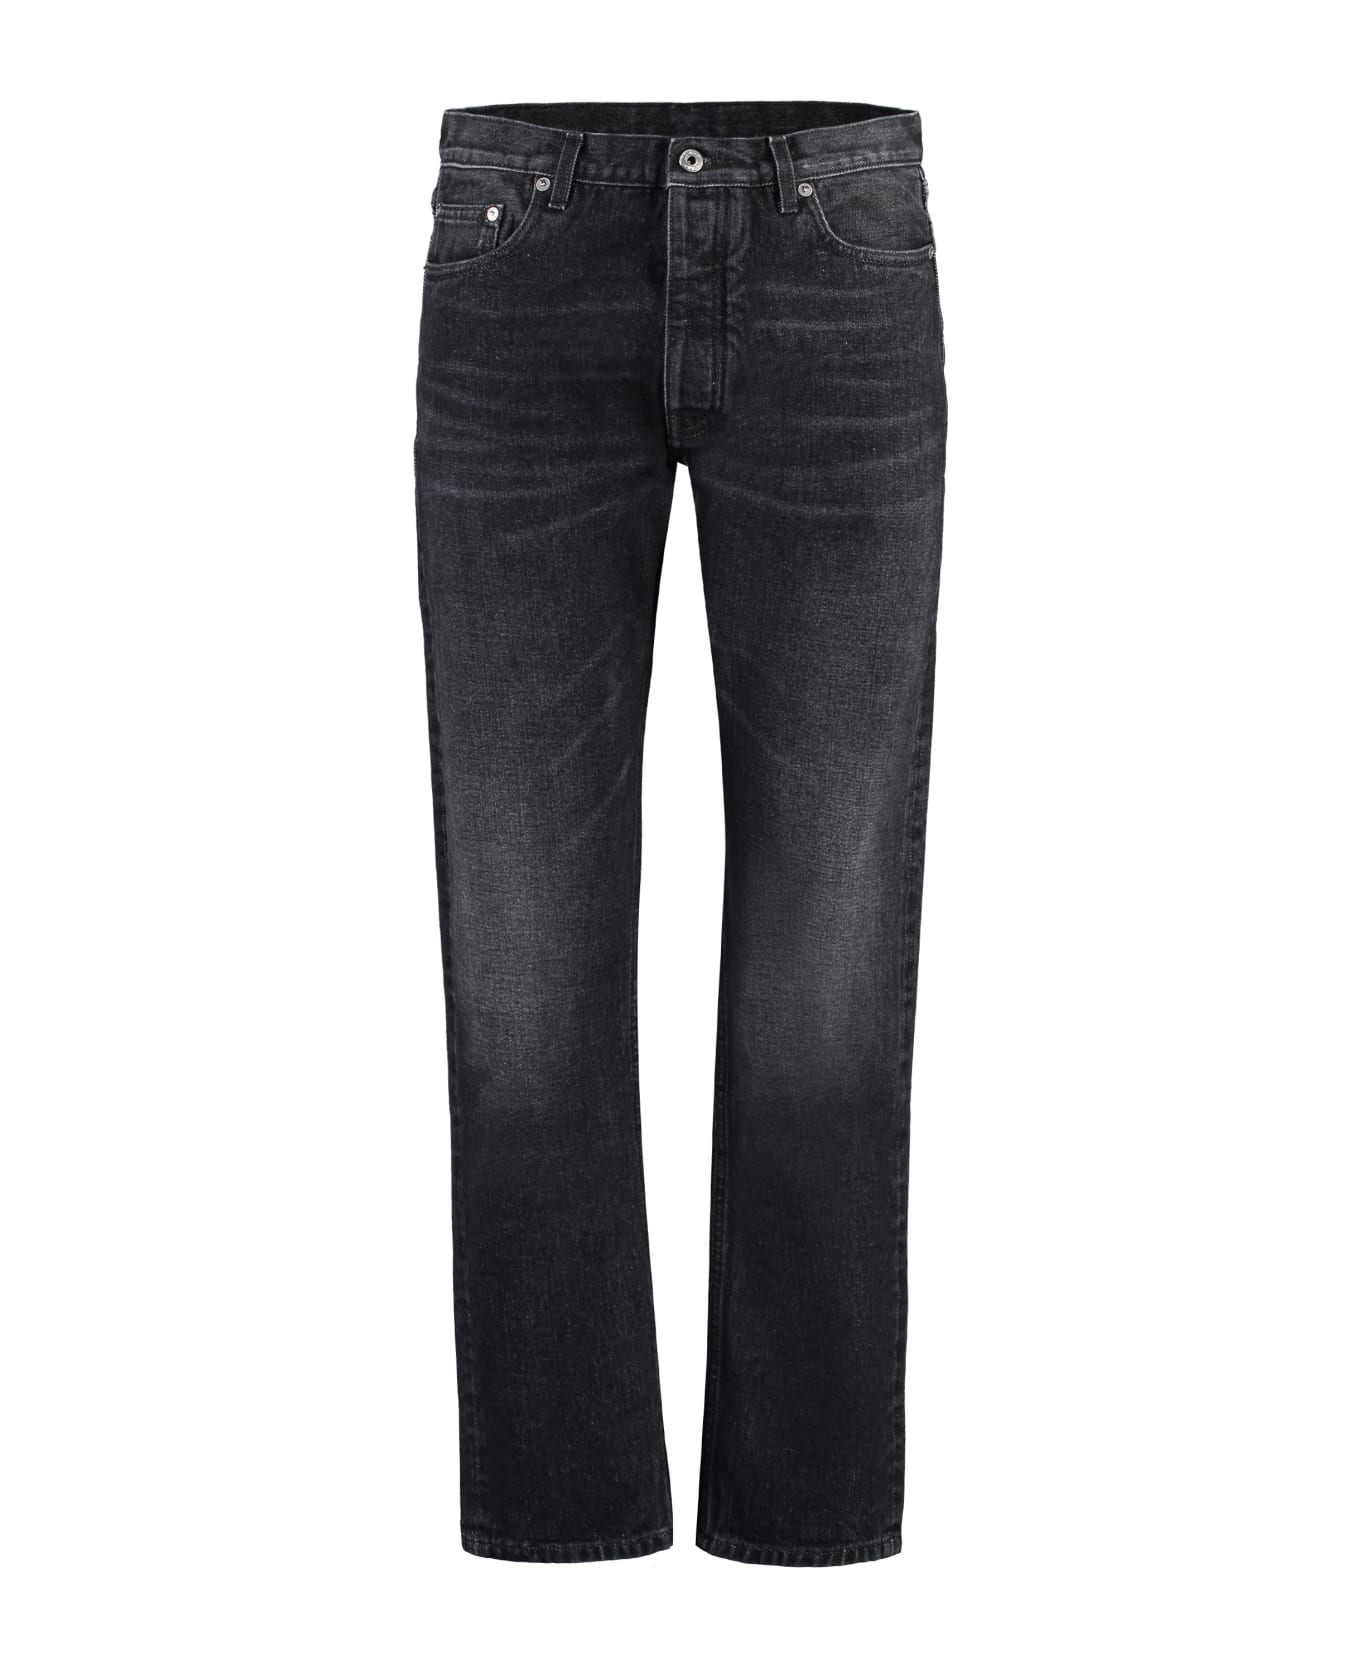 Off-White 5-pocket Straight-leg Jeans - black デニム